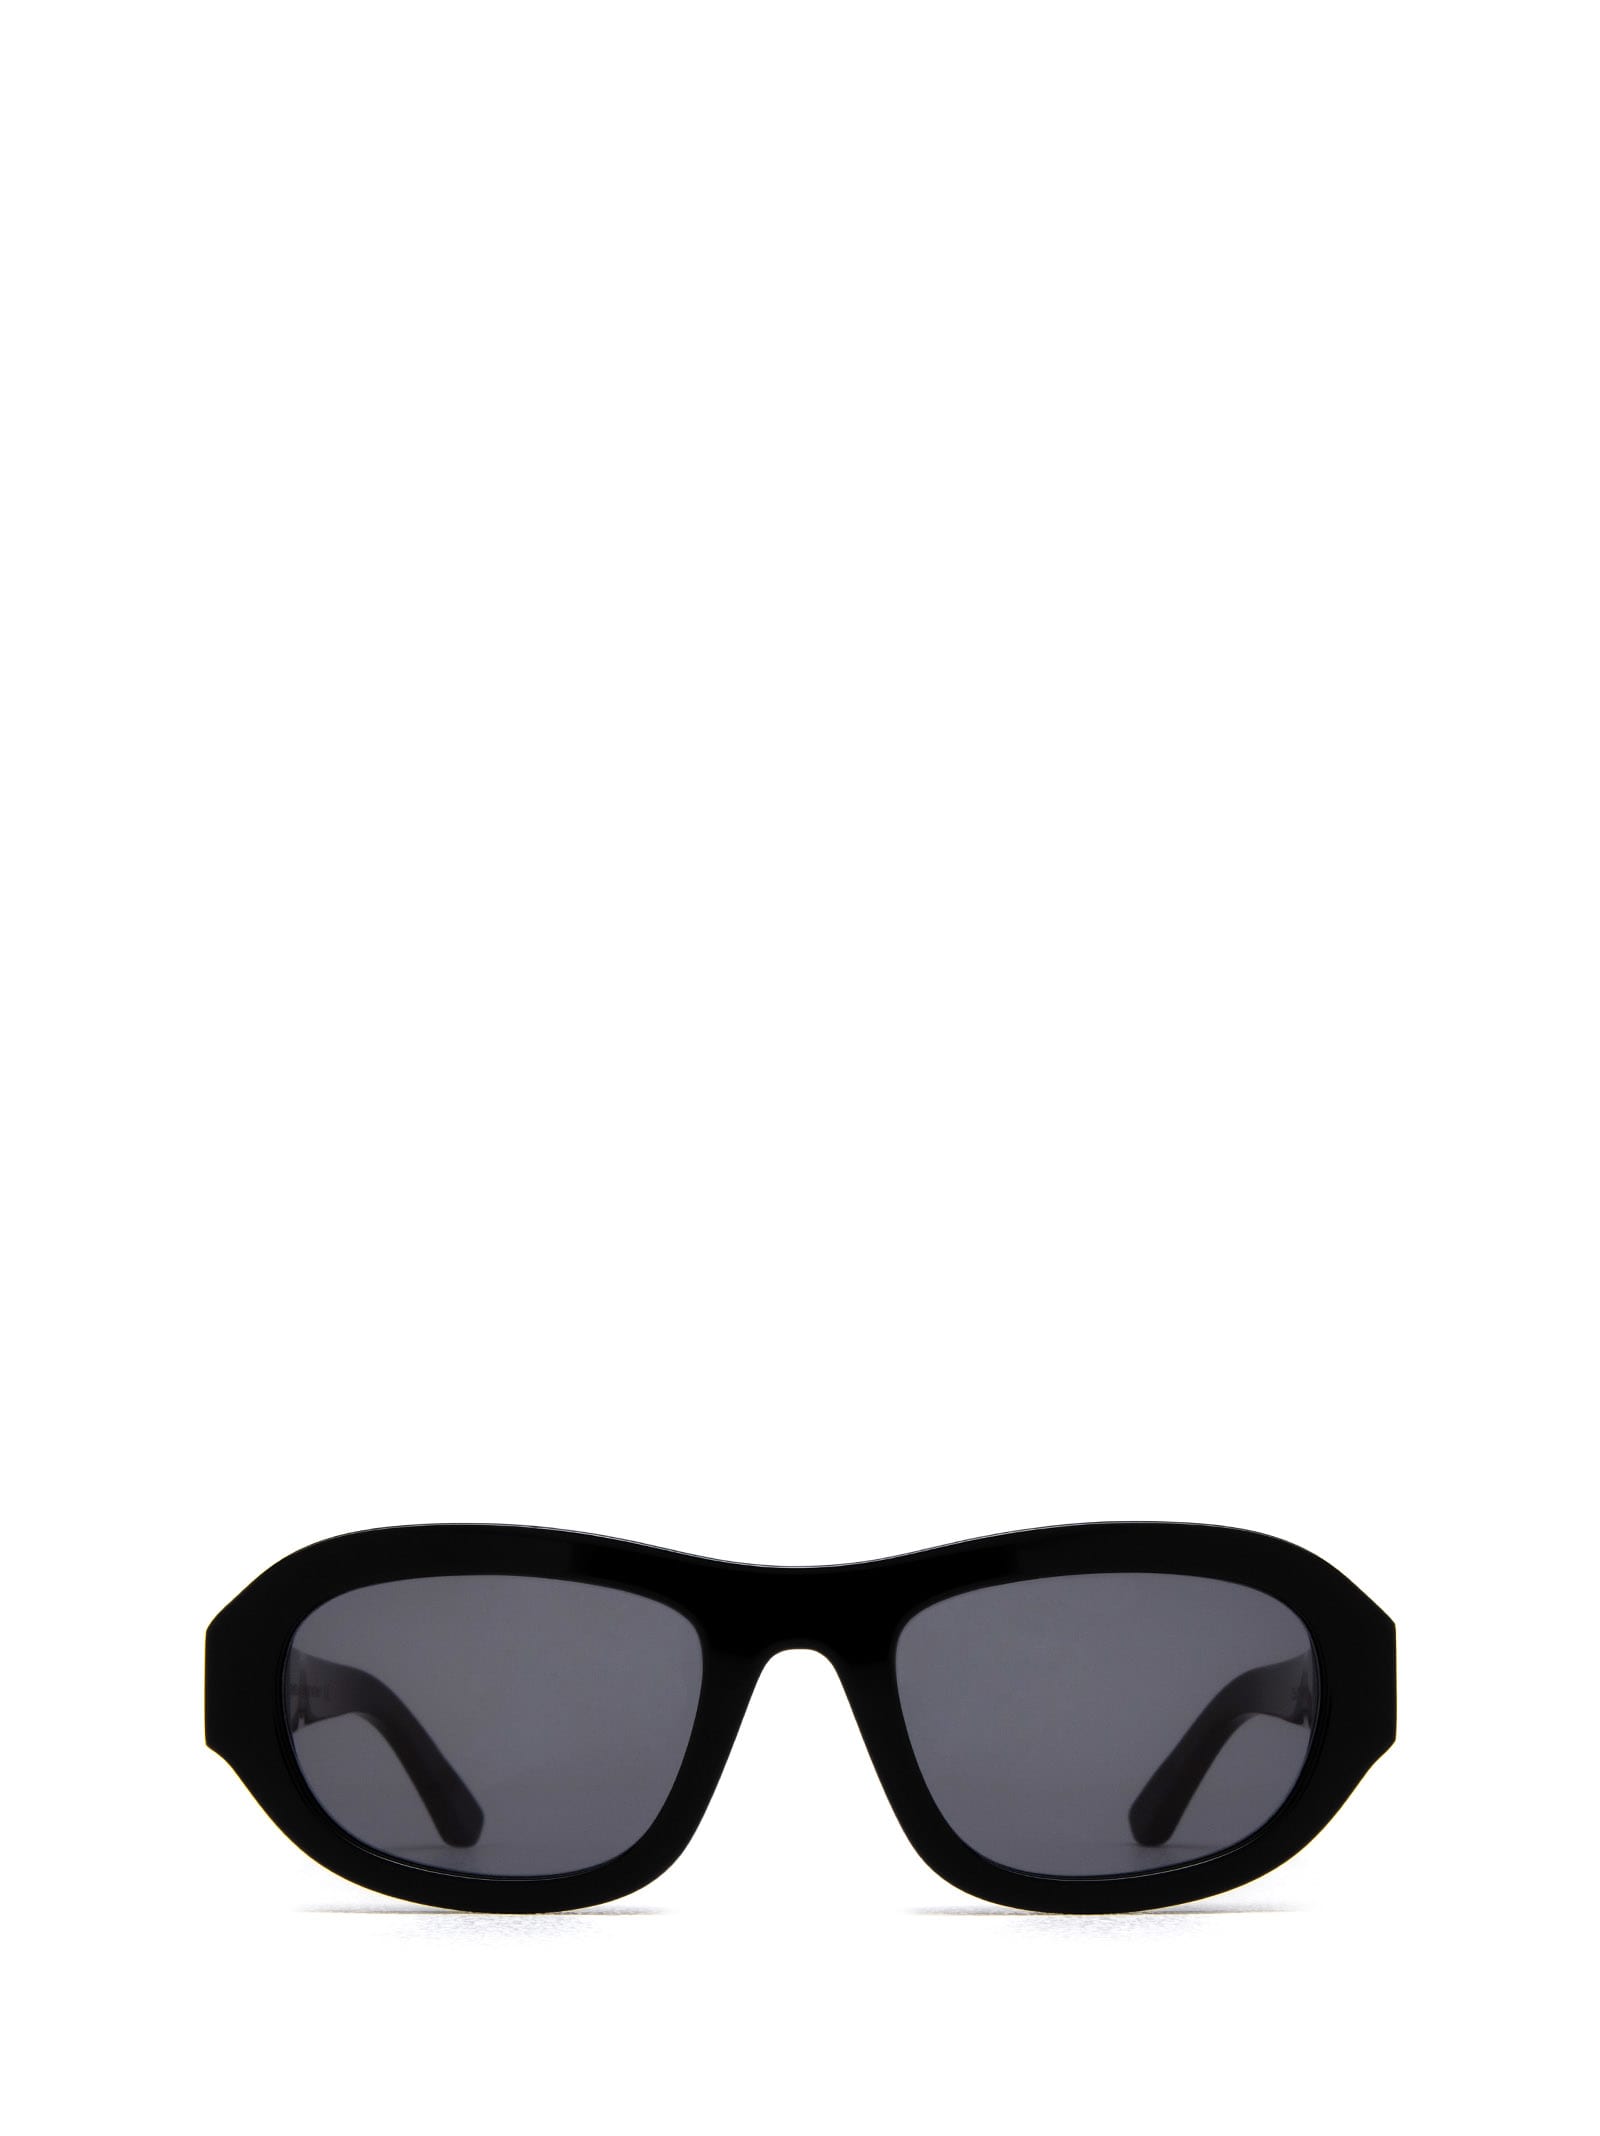 Huma Lee Black Sunglasses